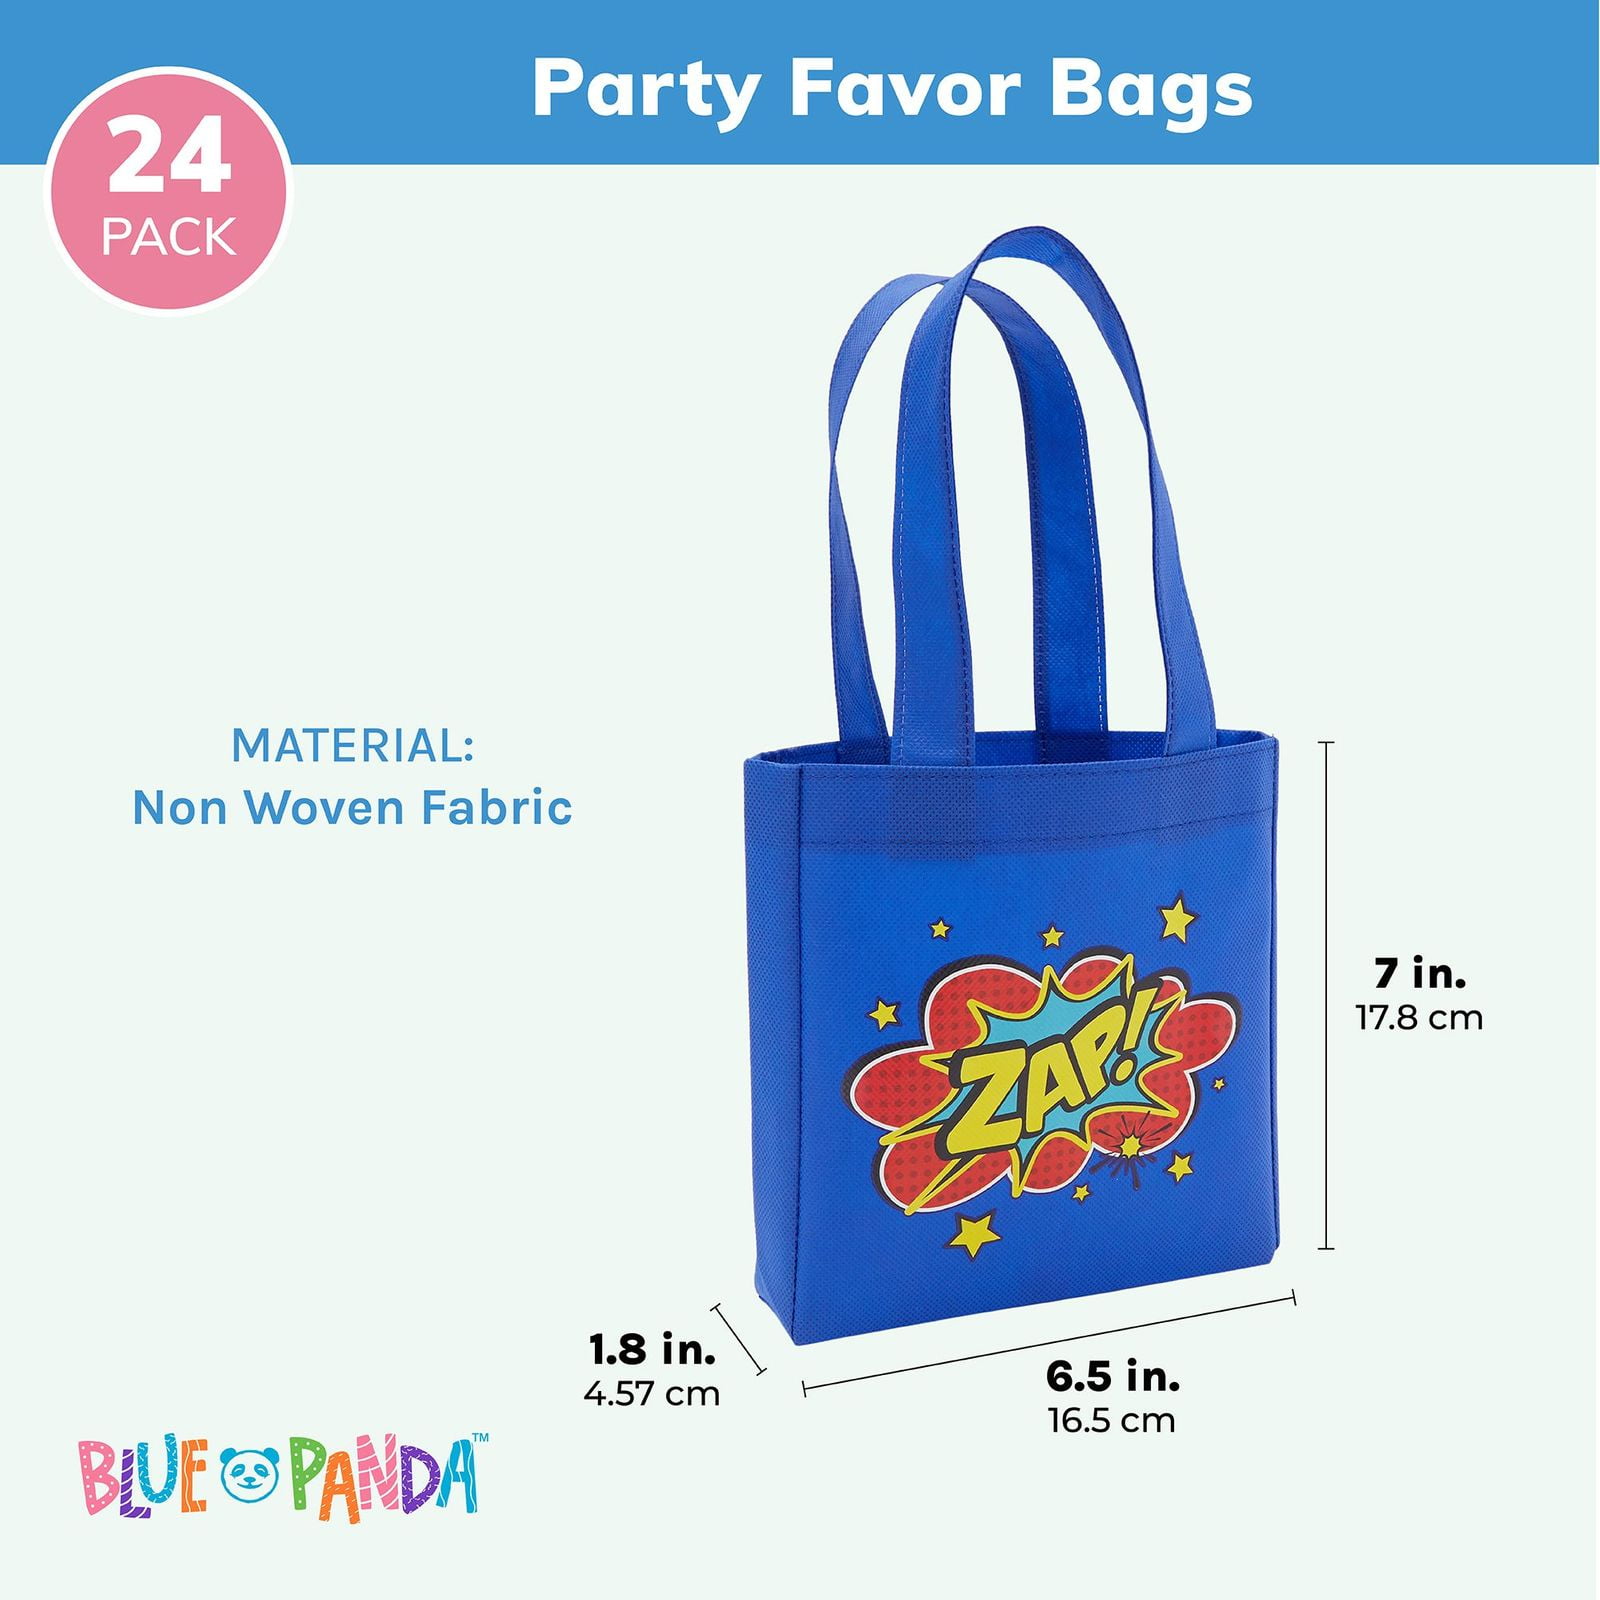 Superhero party favor bags - Chickabug